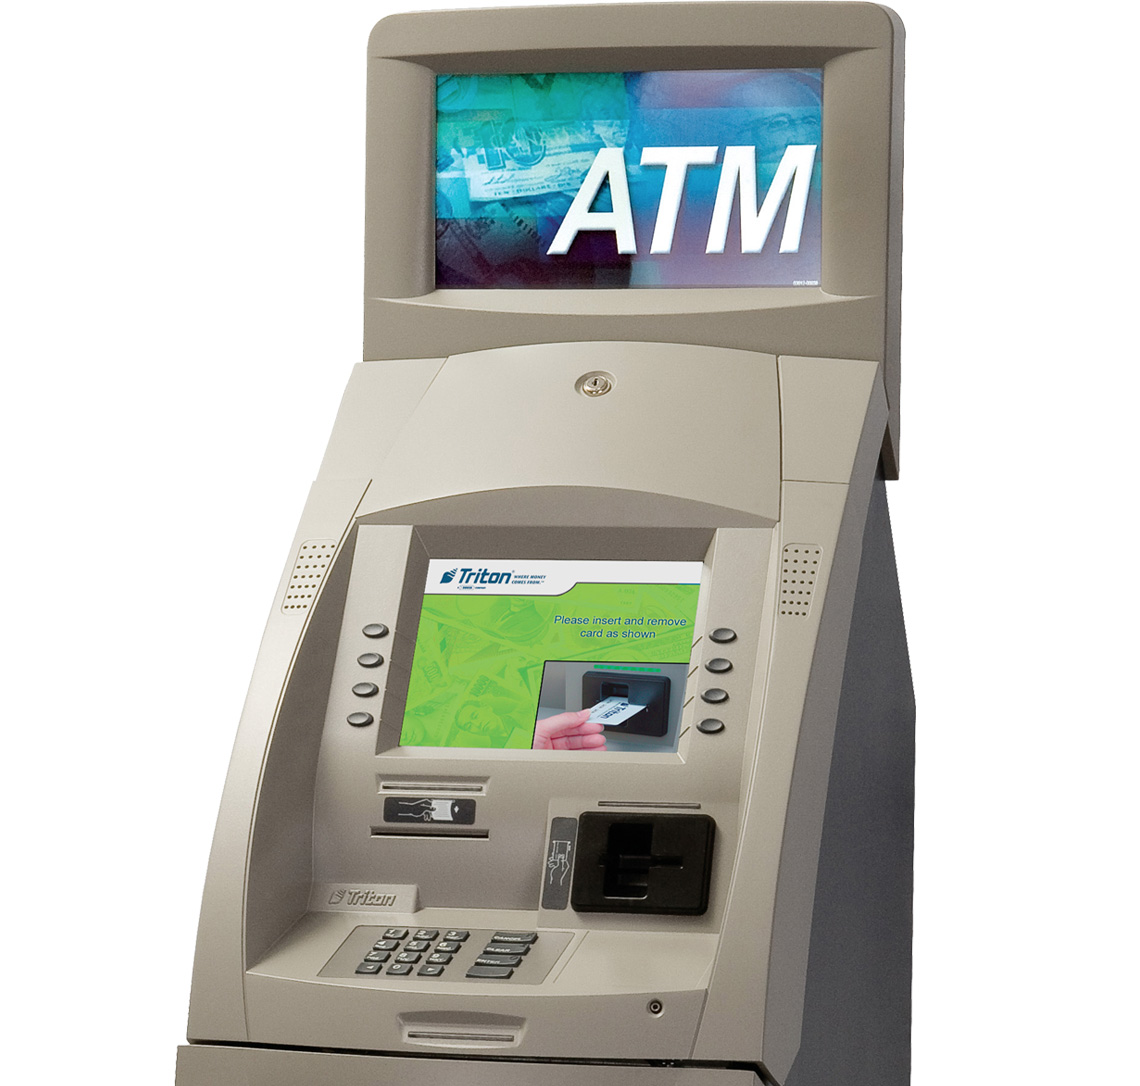 ¿Qué cajeros son ATM